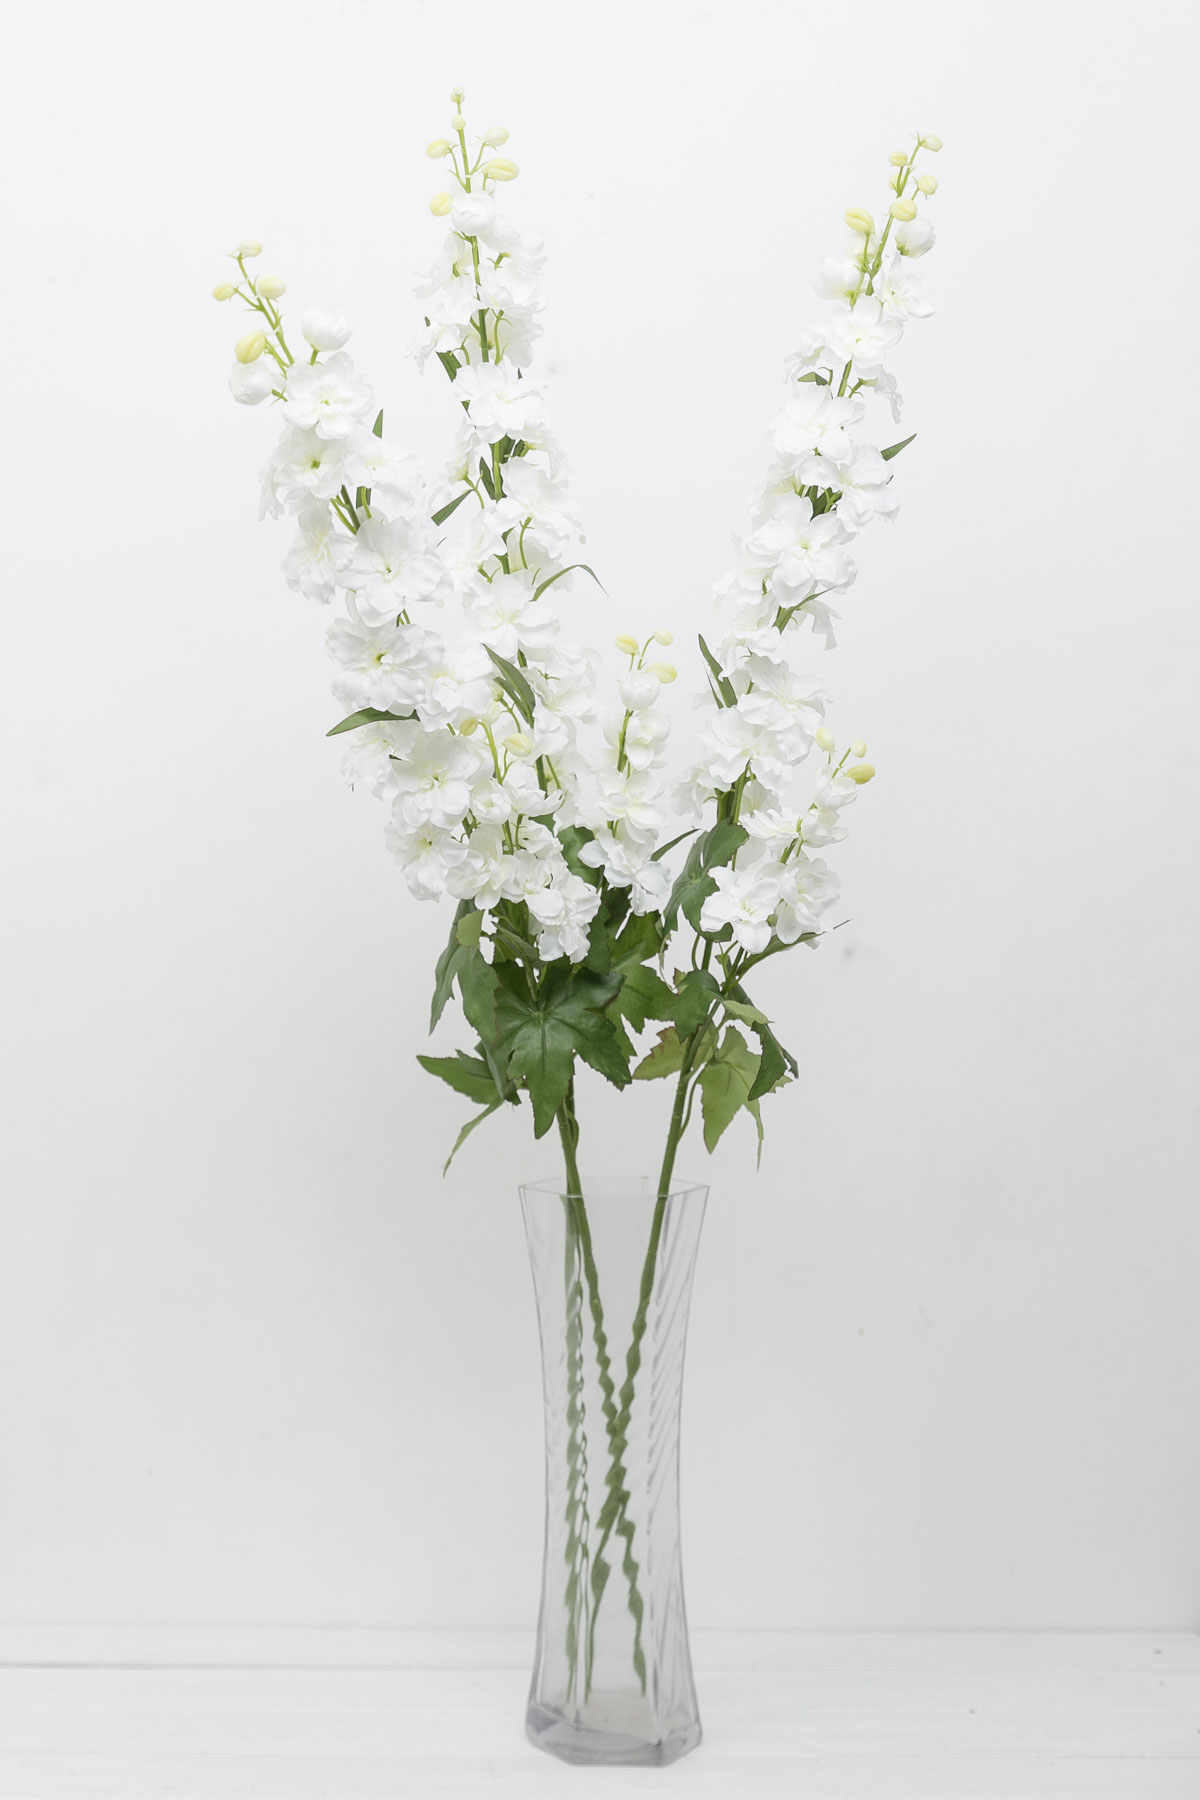 실크플라워 화이트 델피니움조화 꽃가지 98cm 화병에 세줄기 꽂아놓은 사진